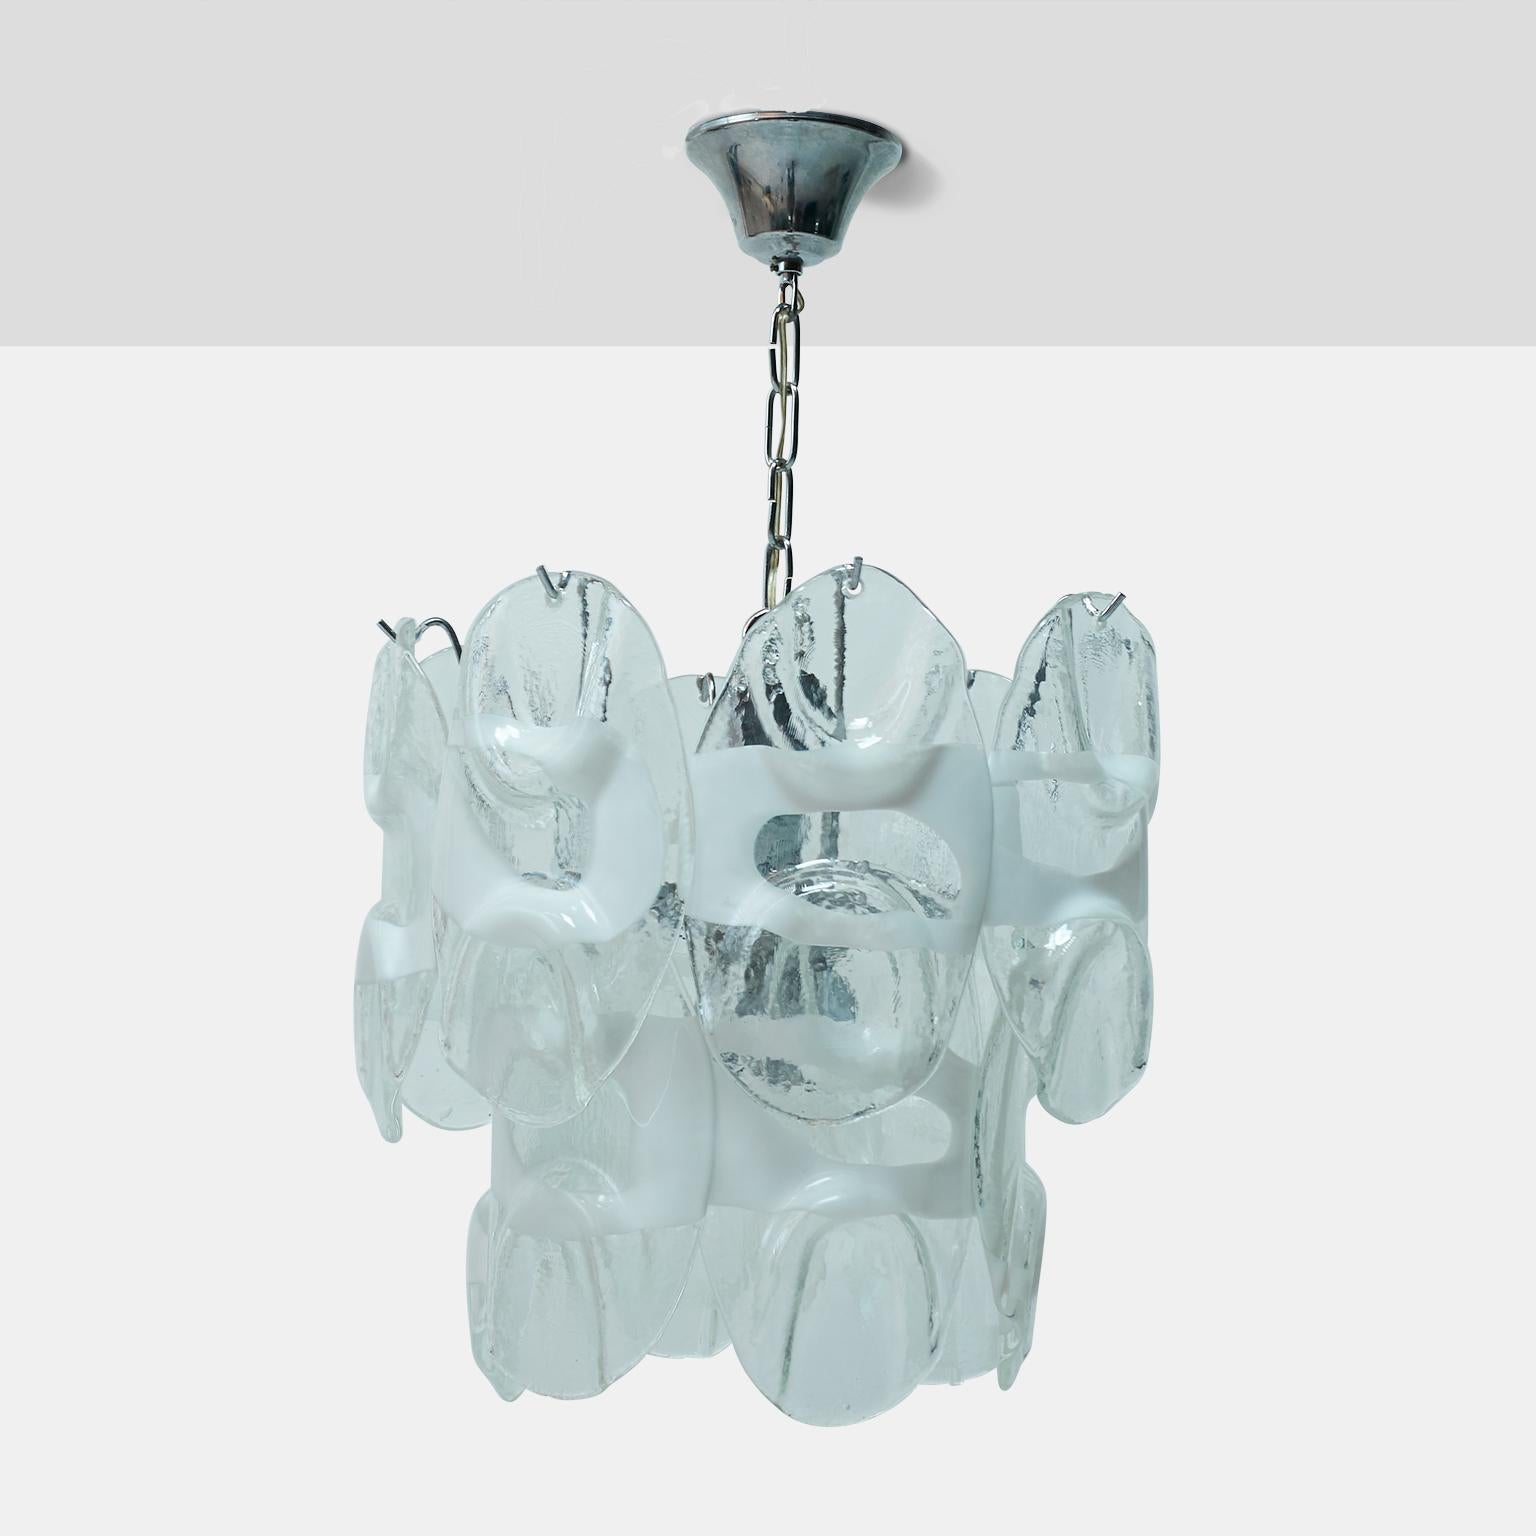 Une lampe suspendue à deux niveaux en verre de Murano blanc et métal chromé par Gino Vistosi. 14 prismes de verre uniques sont suspendus à des crochets chromés. Chaque verre mesure 9,5